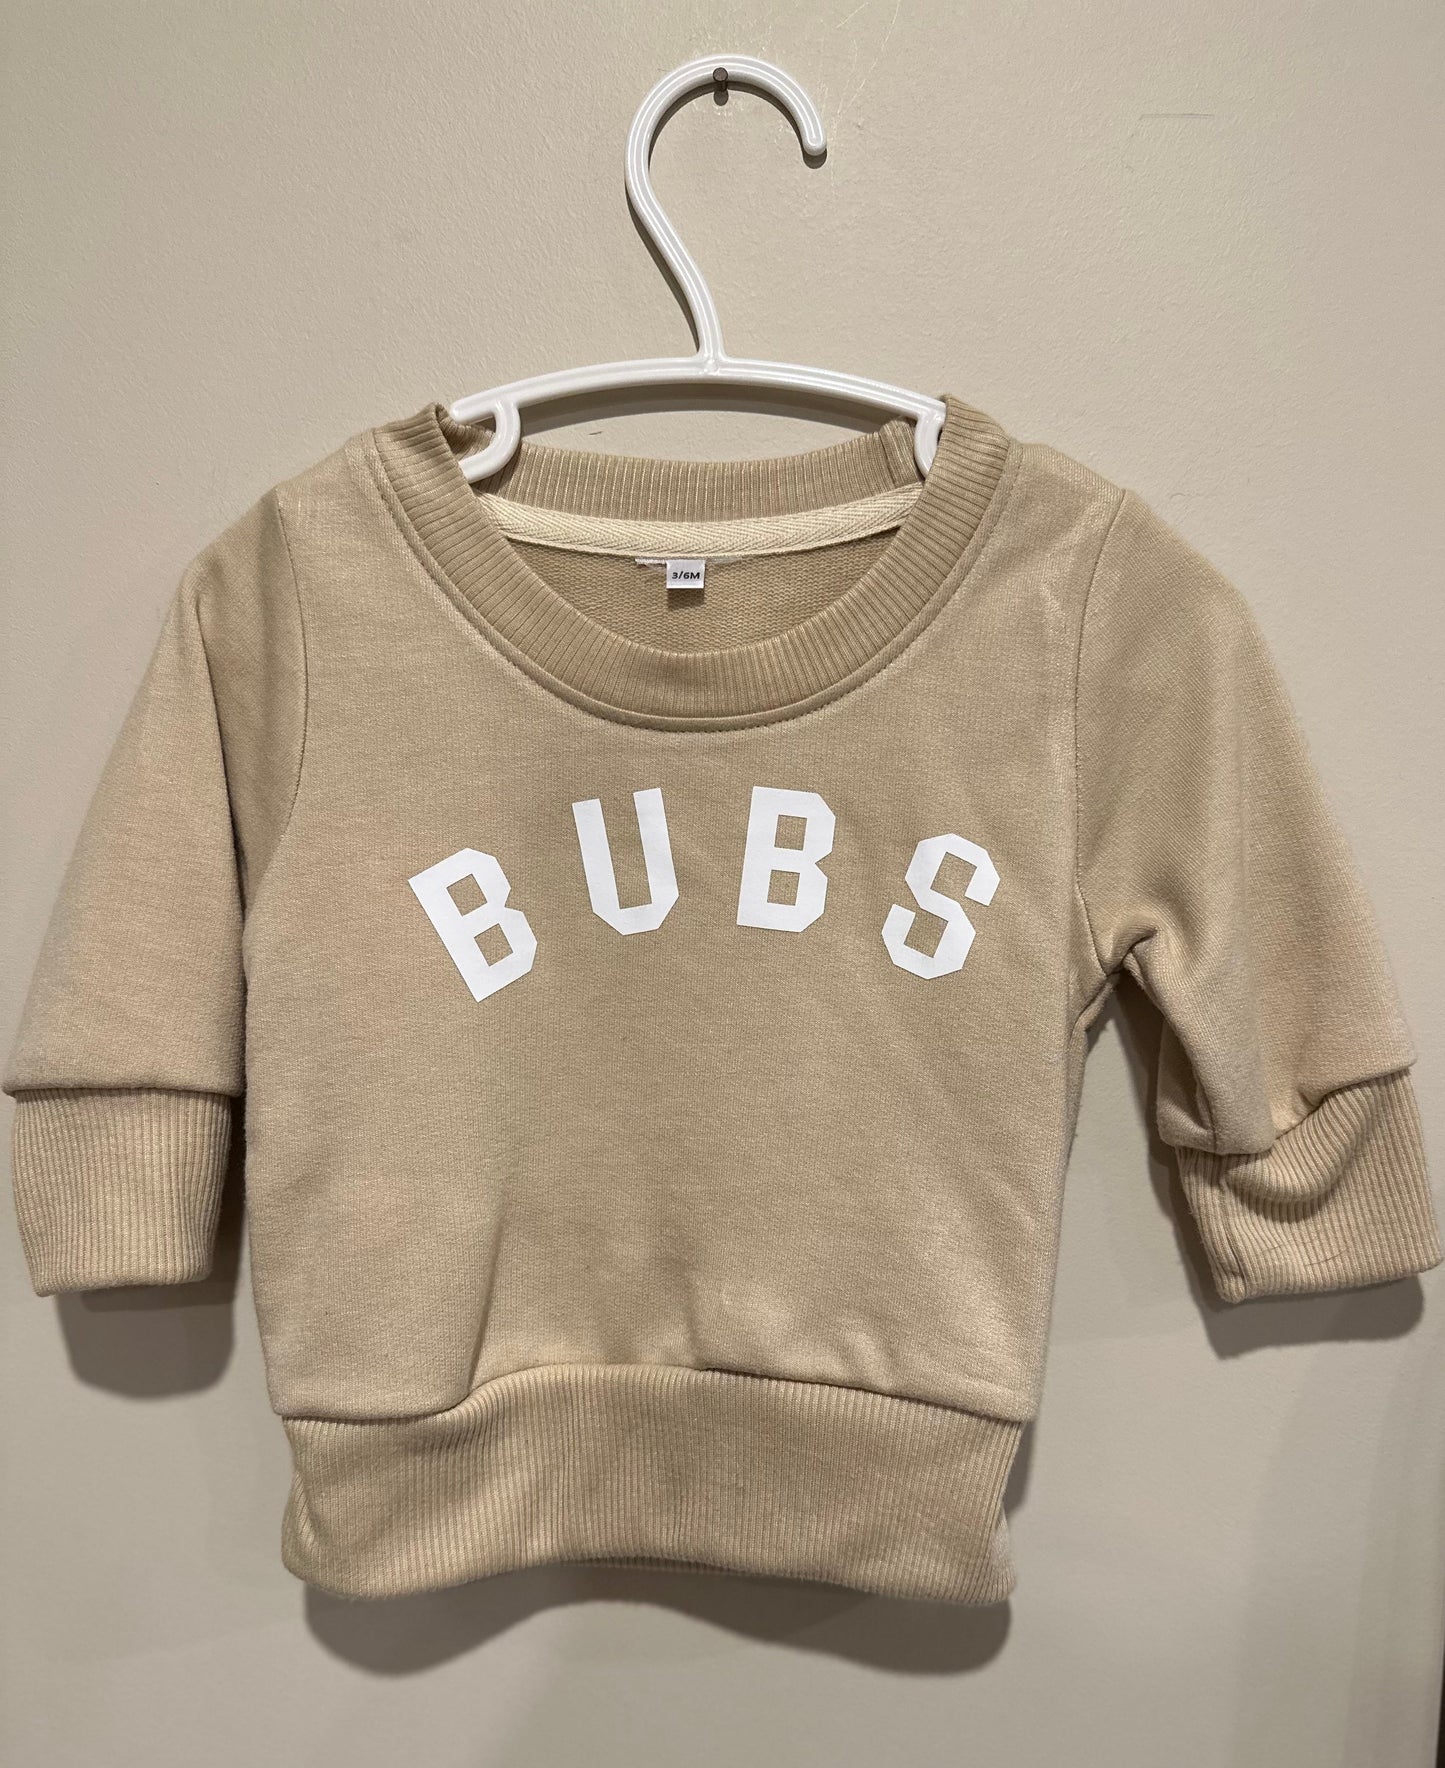 Bubs t-Shirt Designs